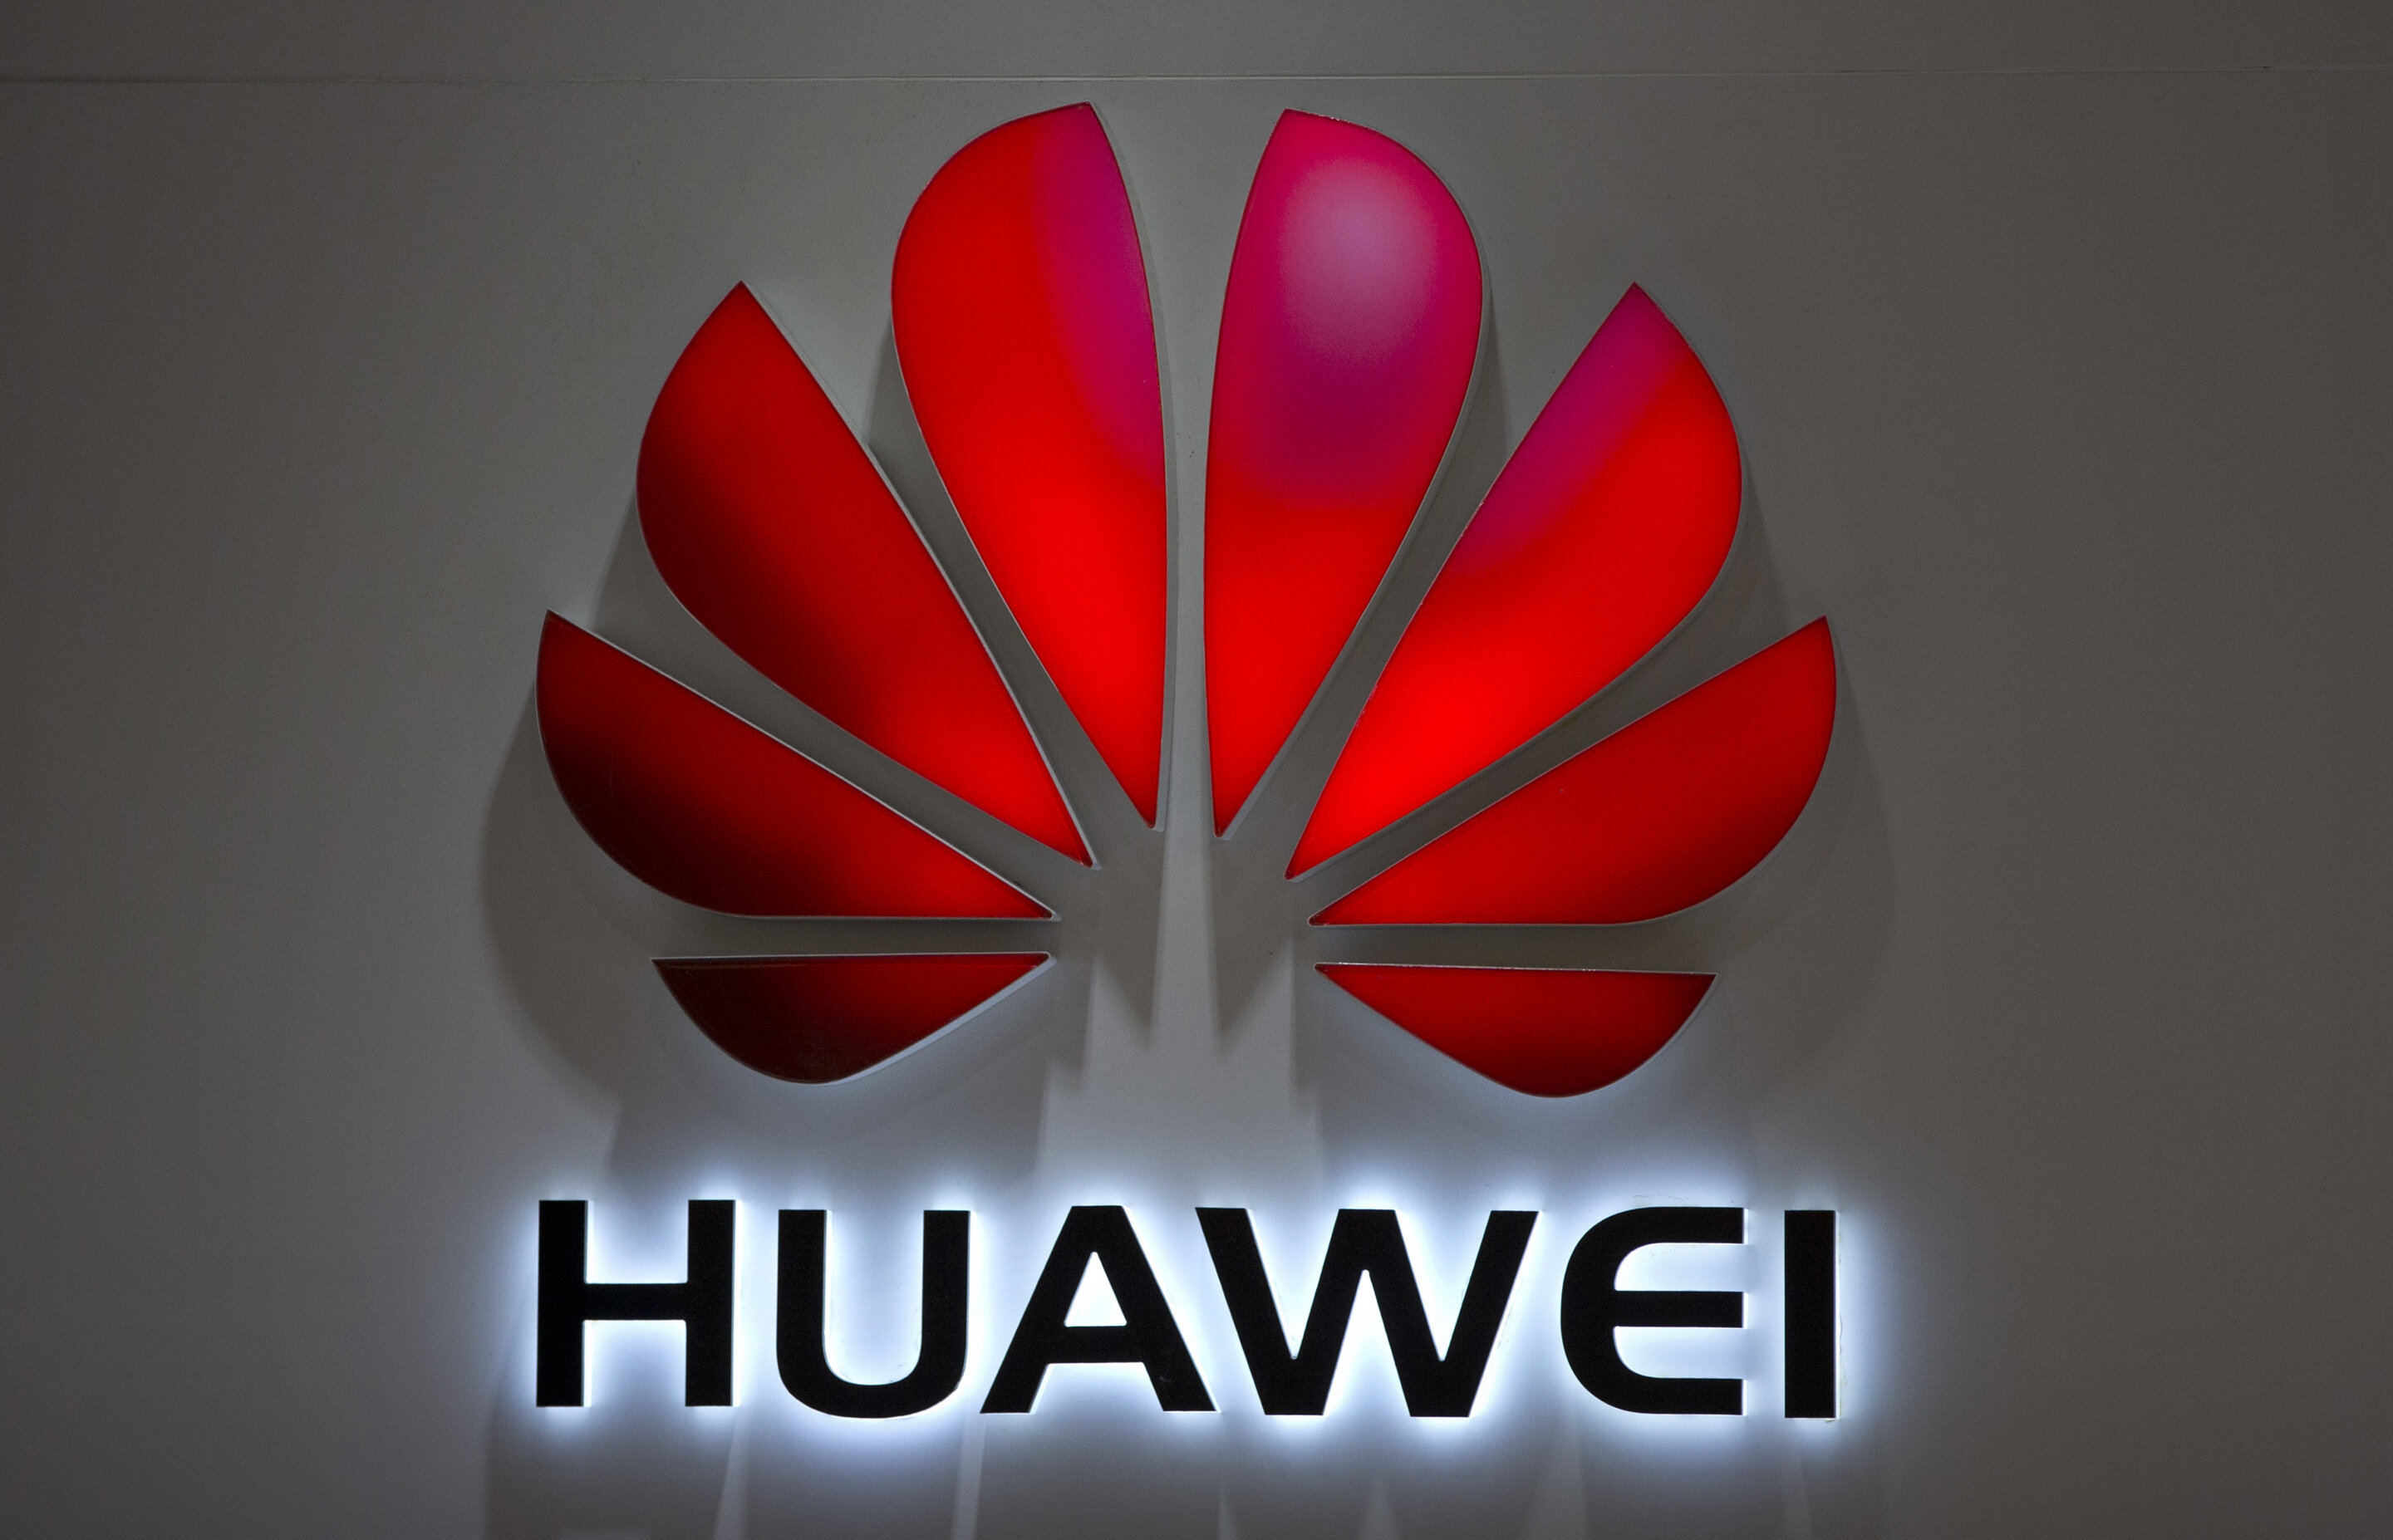 #Huawei dominates MWC mobile tech fair despite US sanctions